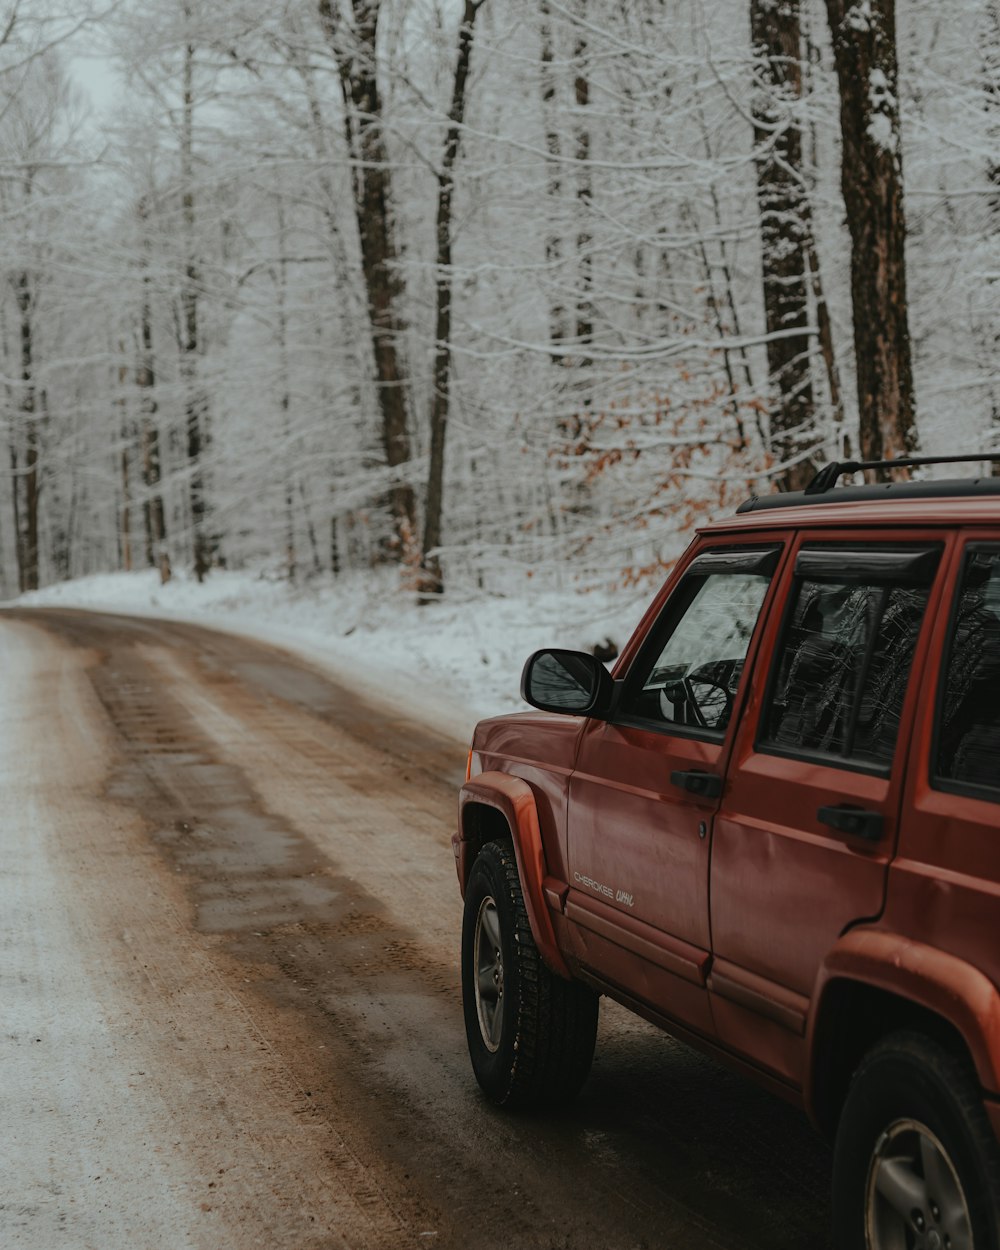 Ein roter Jeep fährt eine schneebedeckte Straße entlang